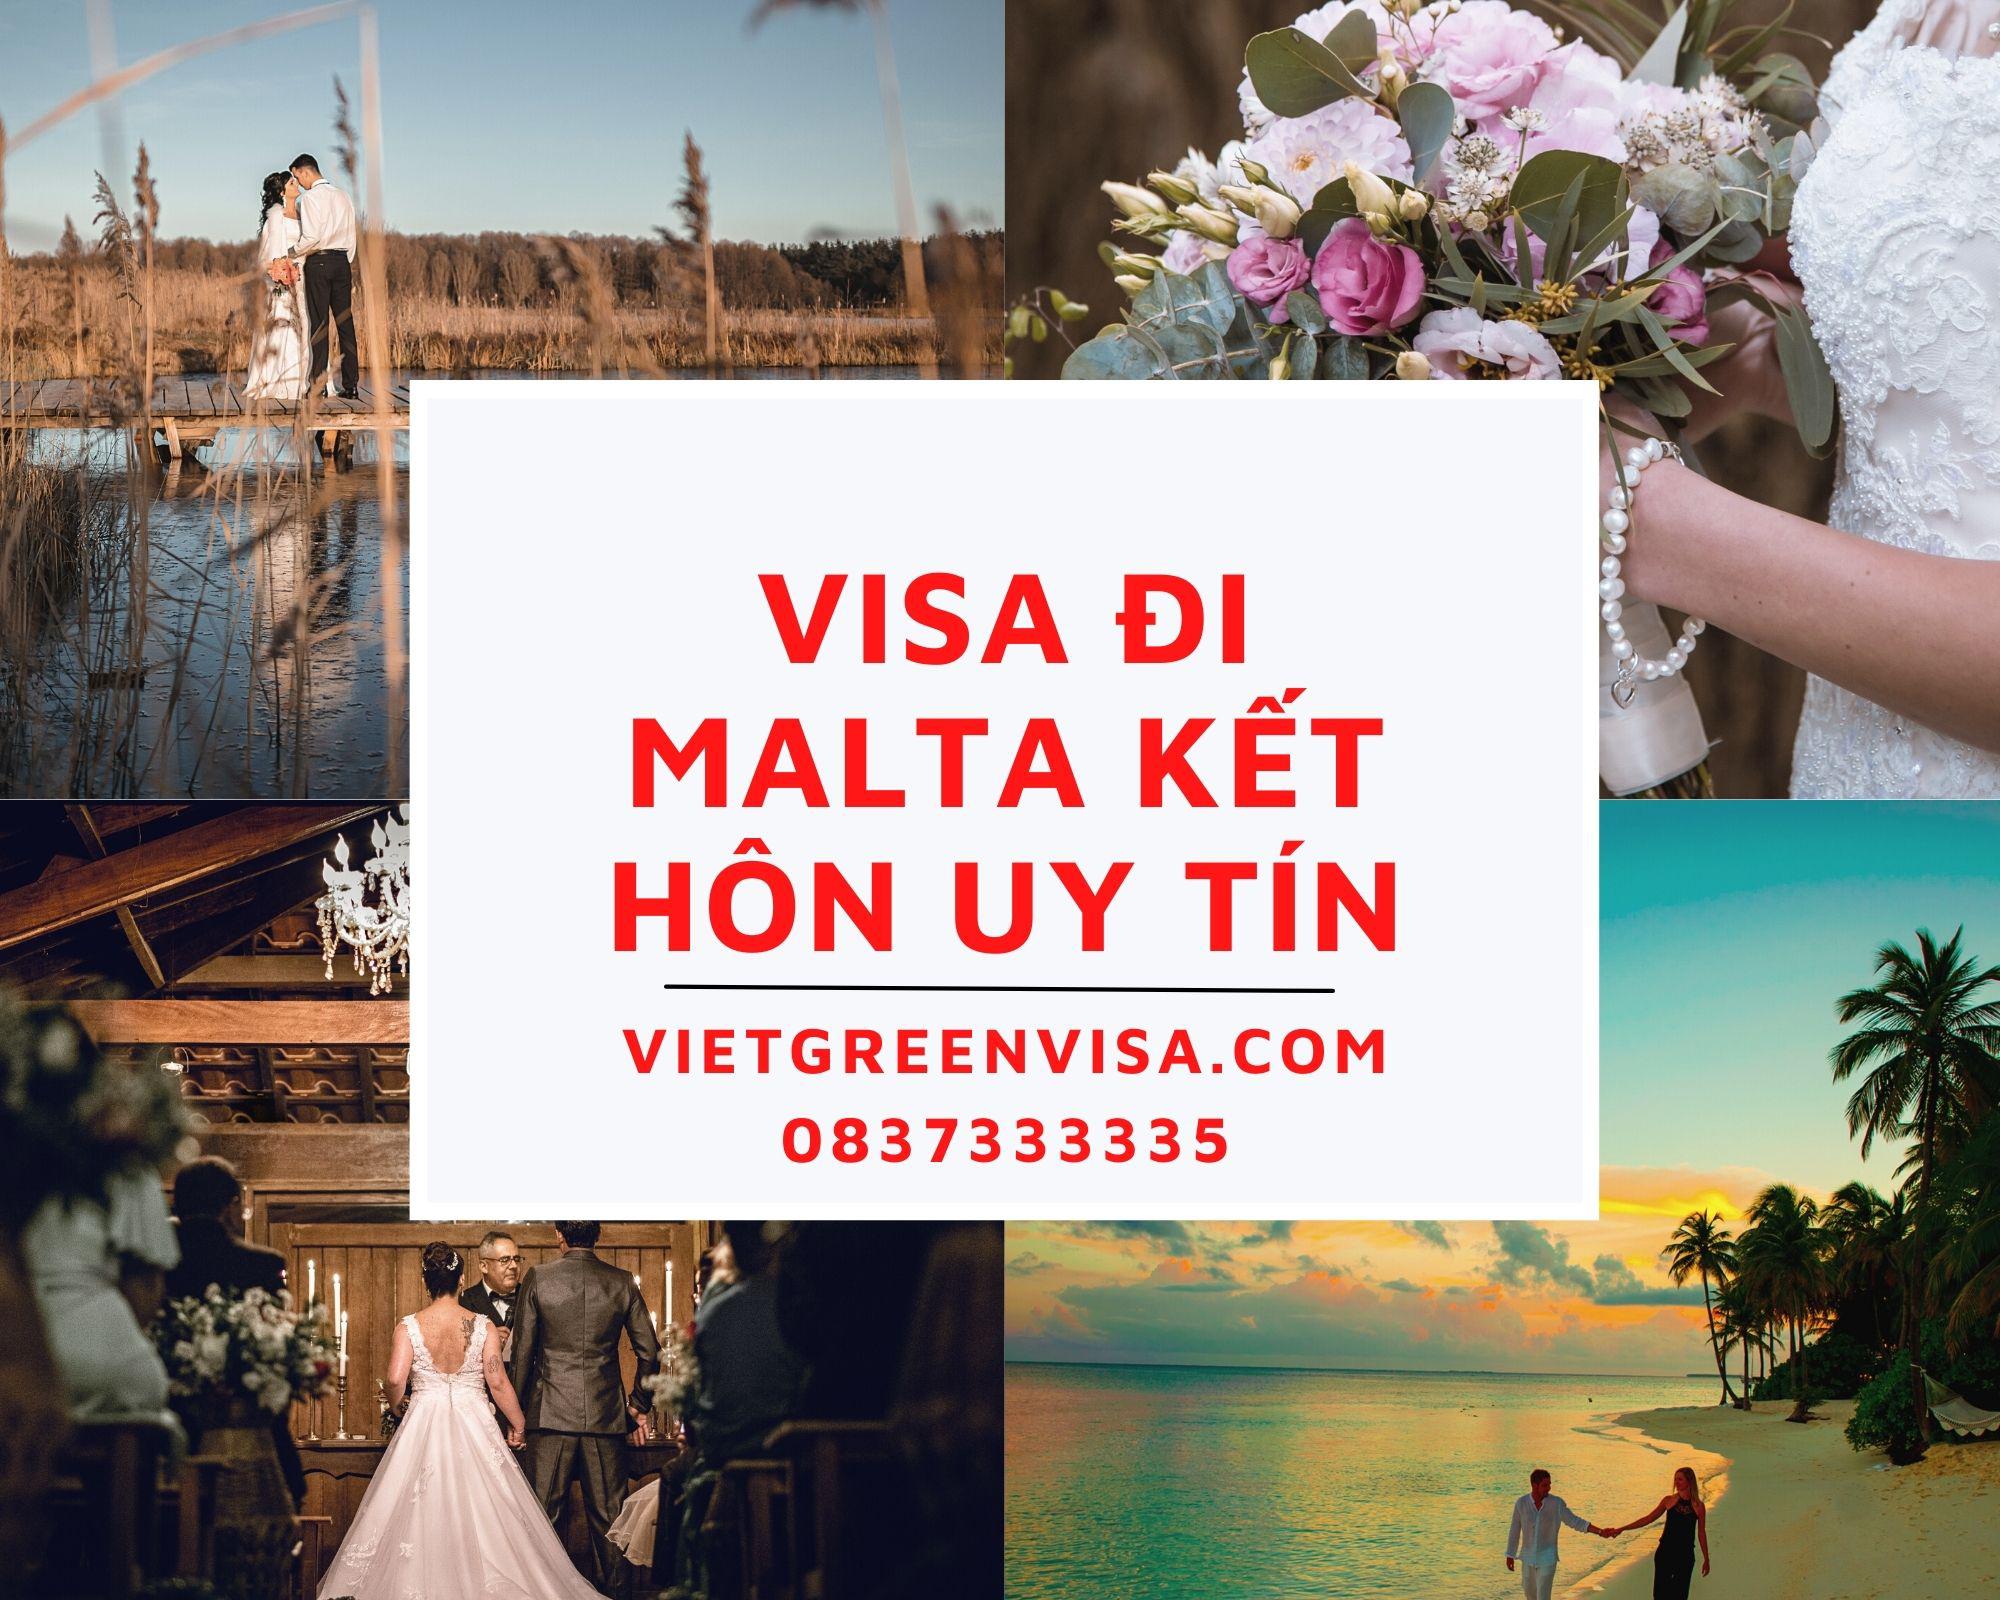 Hỗ trợ làm visa đi Malta kết hôn với công dân Malta